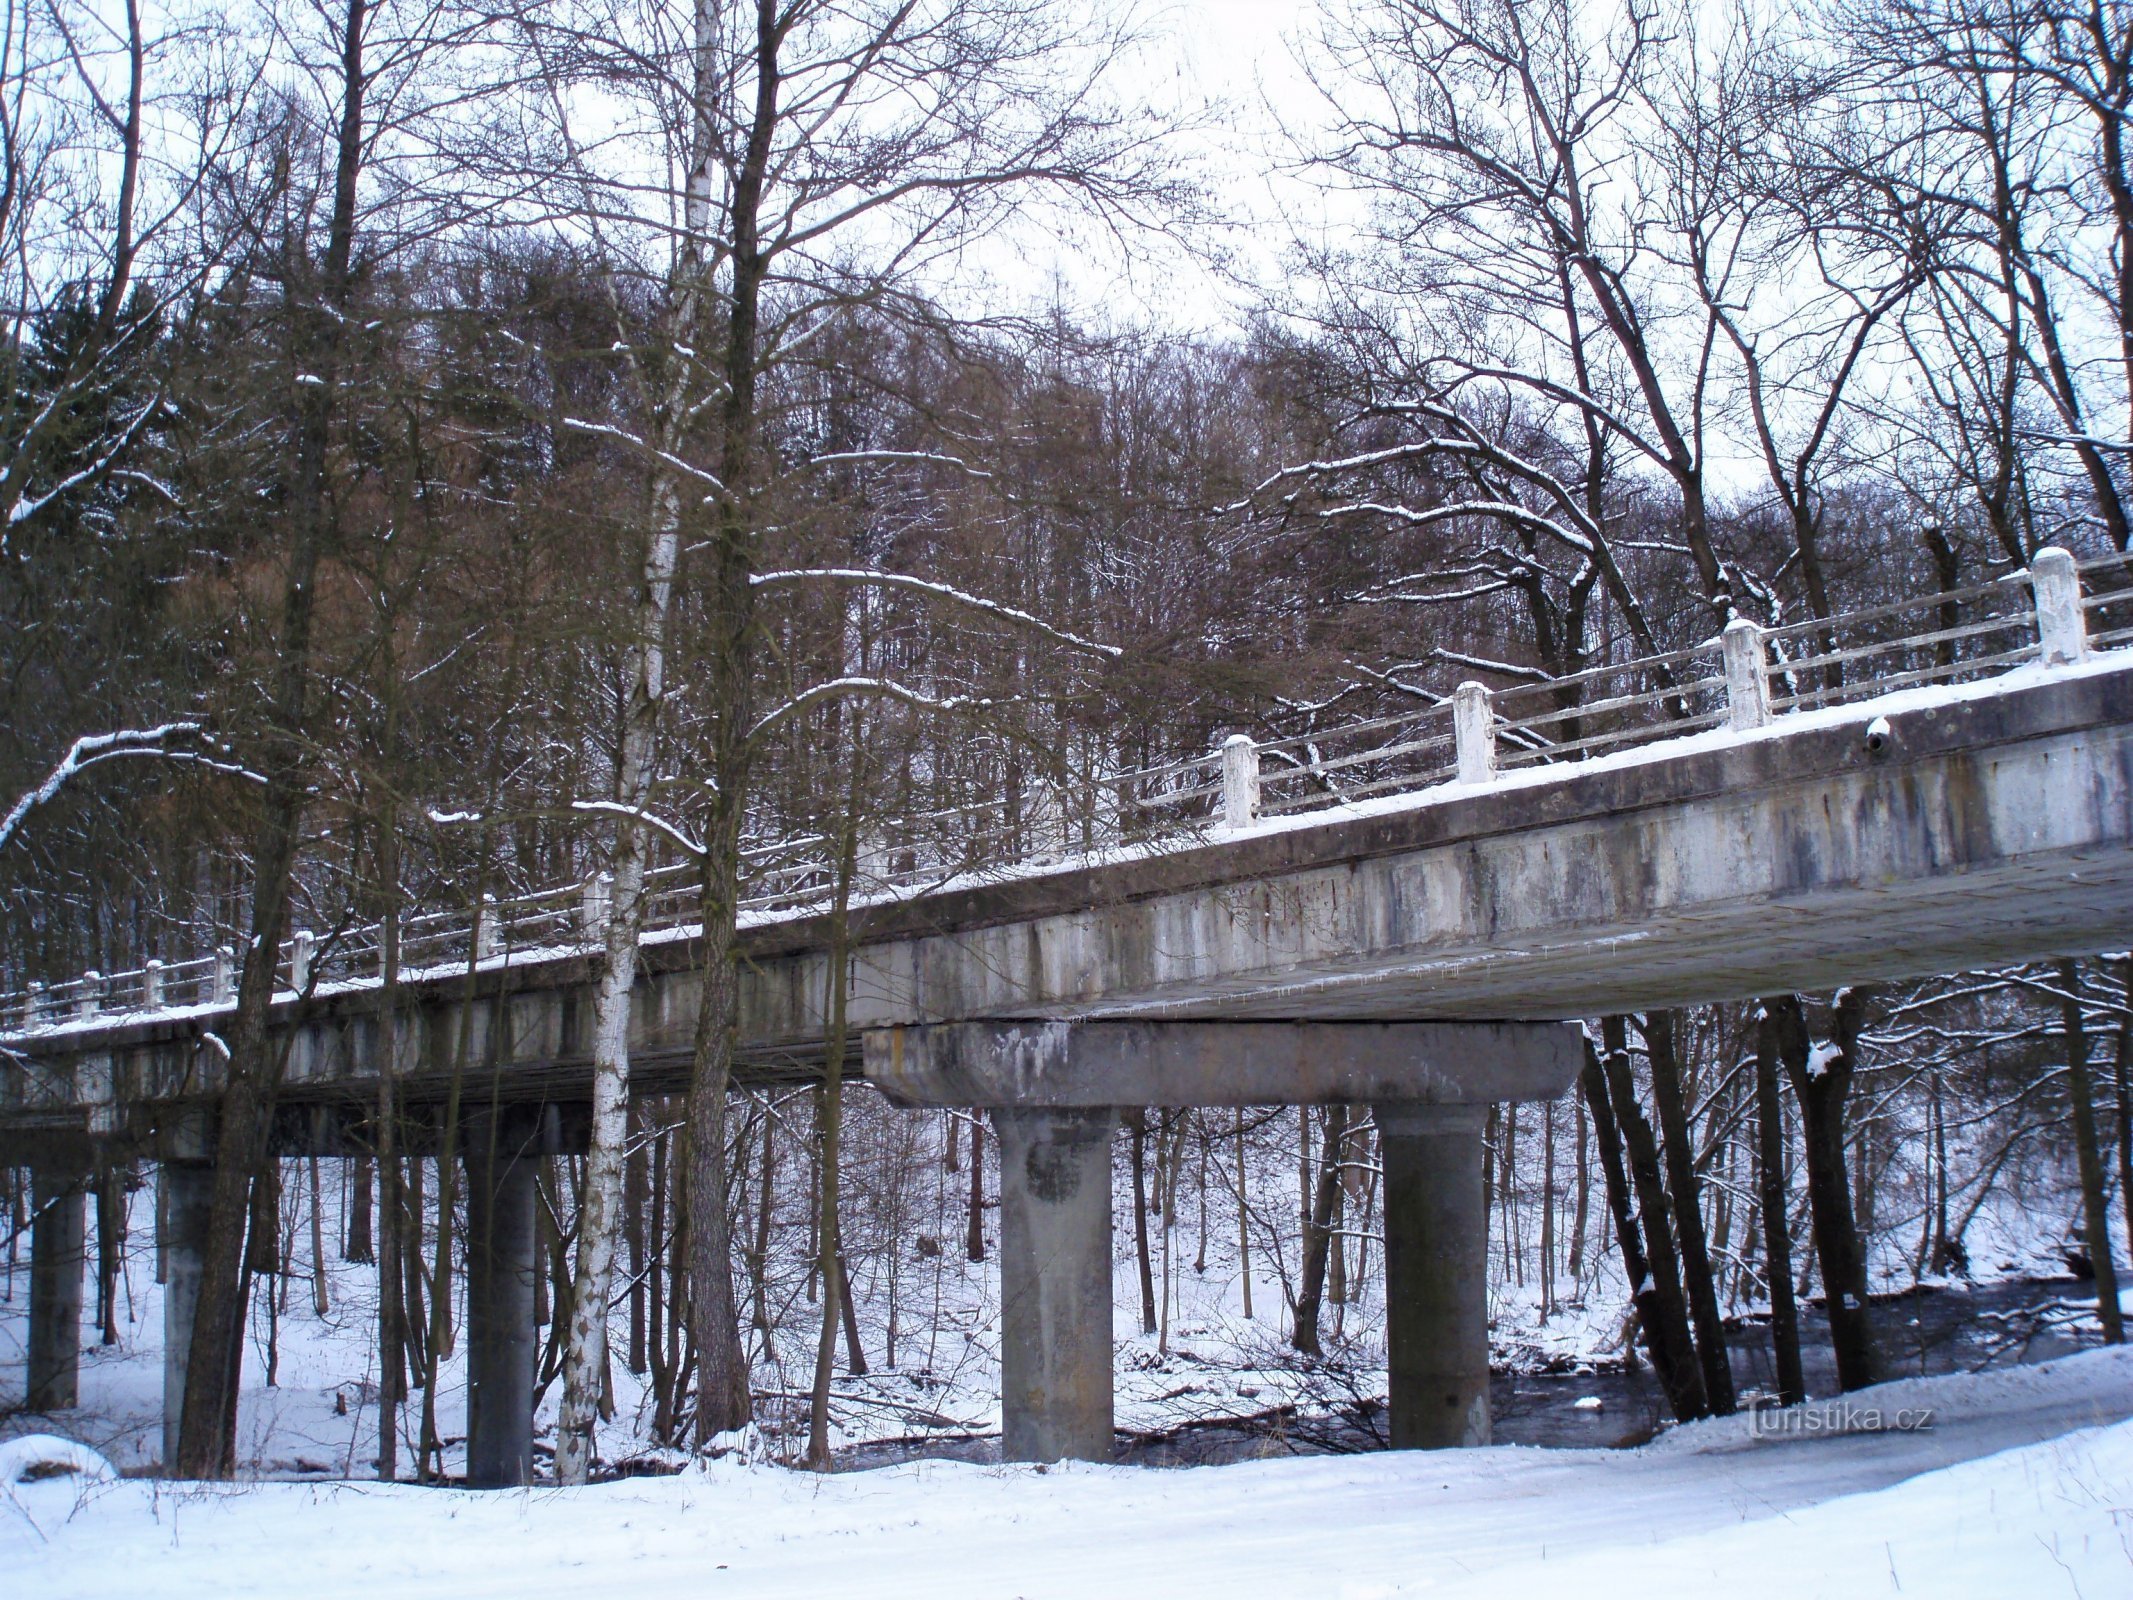 Cầu Slatina trước khi được xây dựng lại (Slatina nad Úpou)